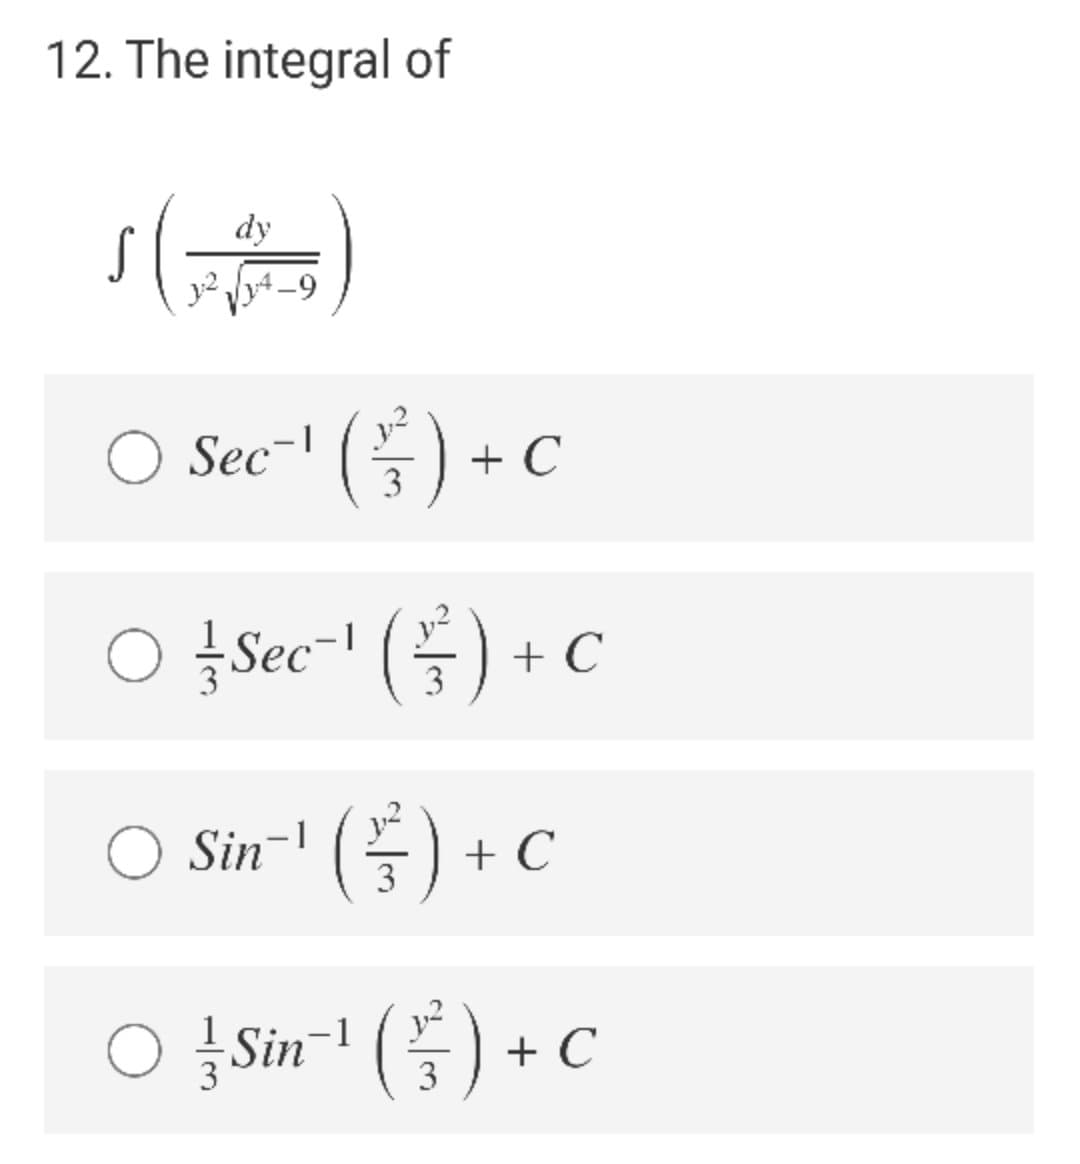 12. The integral of
dy
S
-9
Sec-" () + C
3
O ţSec-" (÷ ) + C
3
Sin-l (플)
G) +c
3
o Sim' (등) +C
+ C
3
